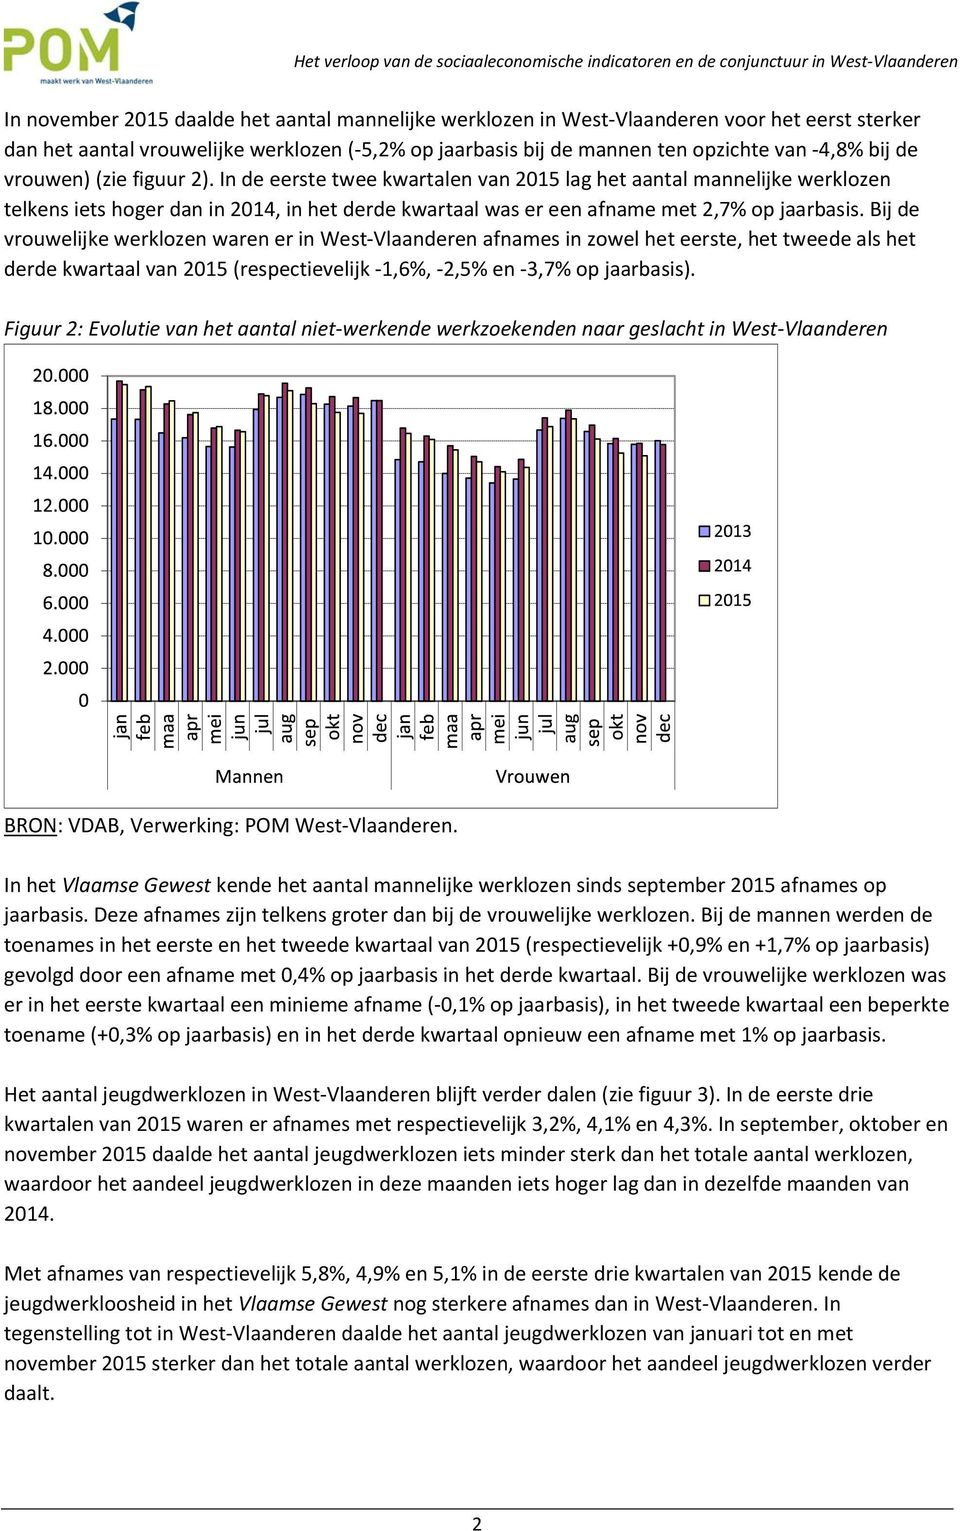 Bij de vrouwelijke werklozen waren er in West Vlaanderen afnames in zowel het eerste, het tweede als het derde kwartaal van 2015 (respectievelijk 1,6%, 2,5% en 3,7% op jaarbasis).